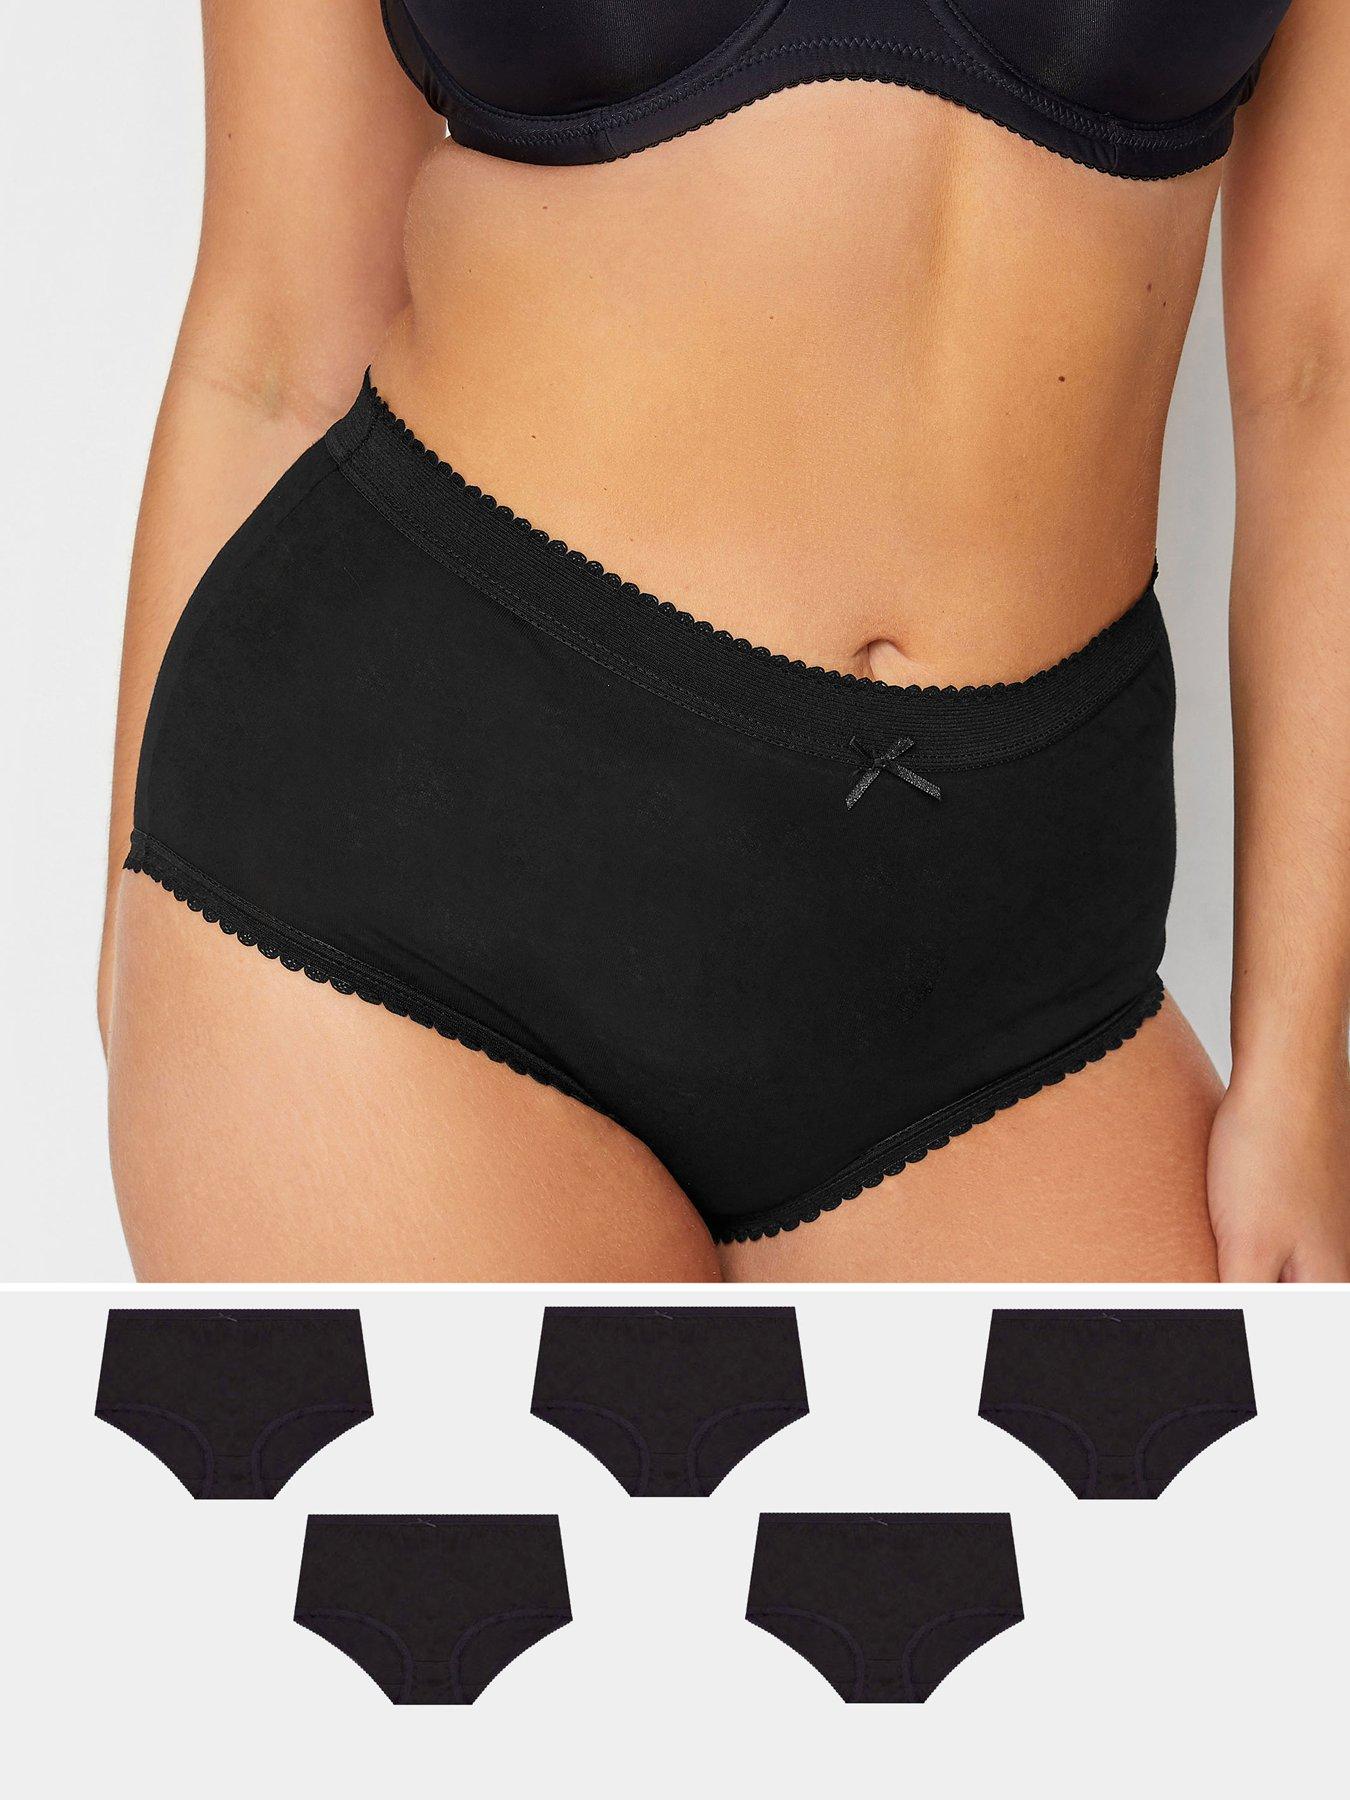 5-pack Plus Size High Waist Cotton Underwear For Fat Girls.